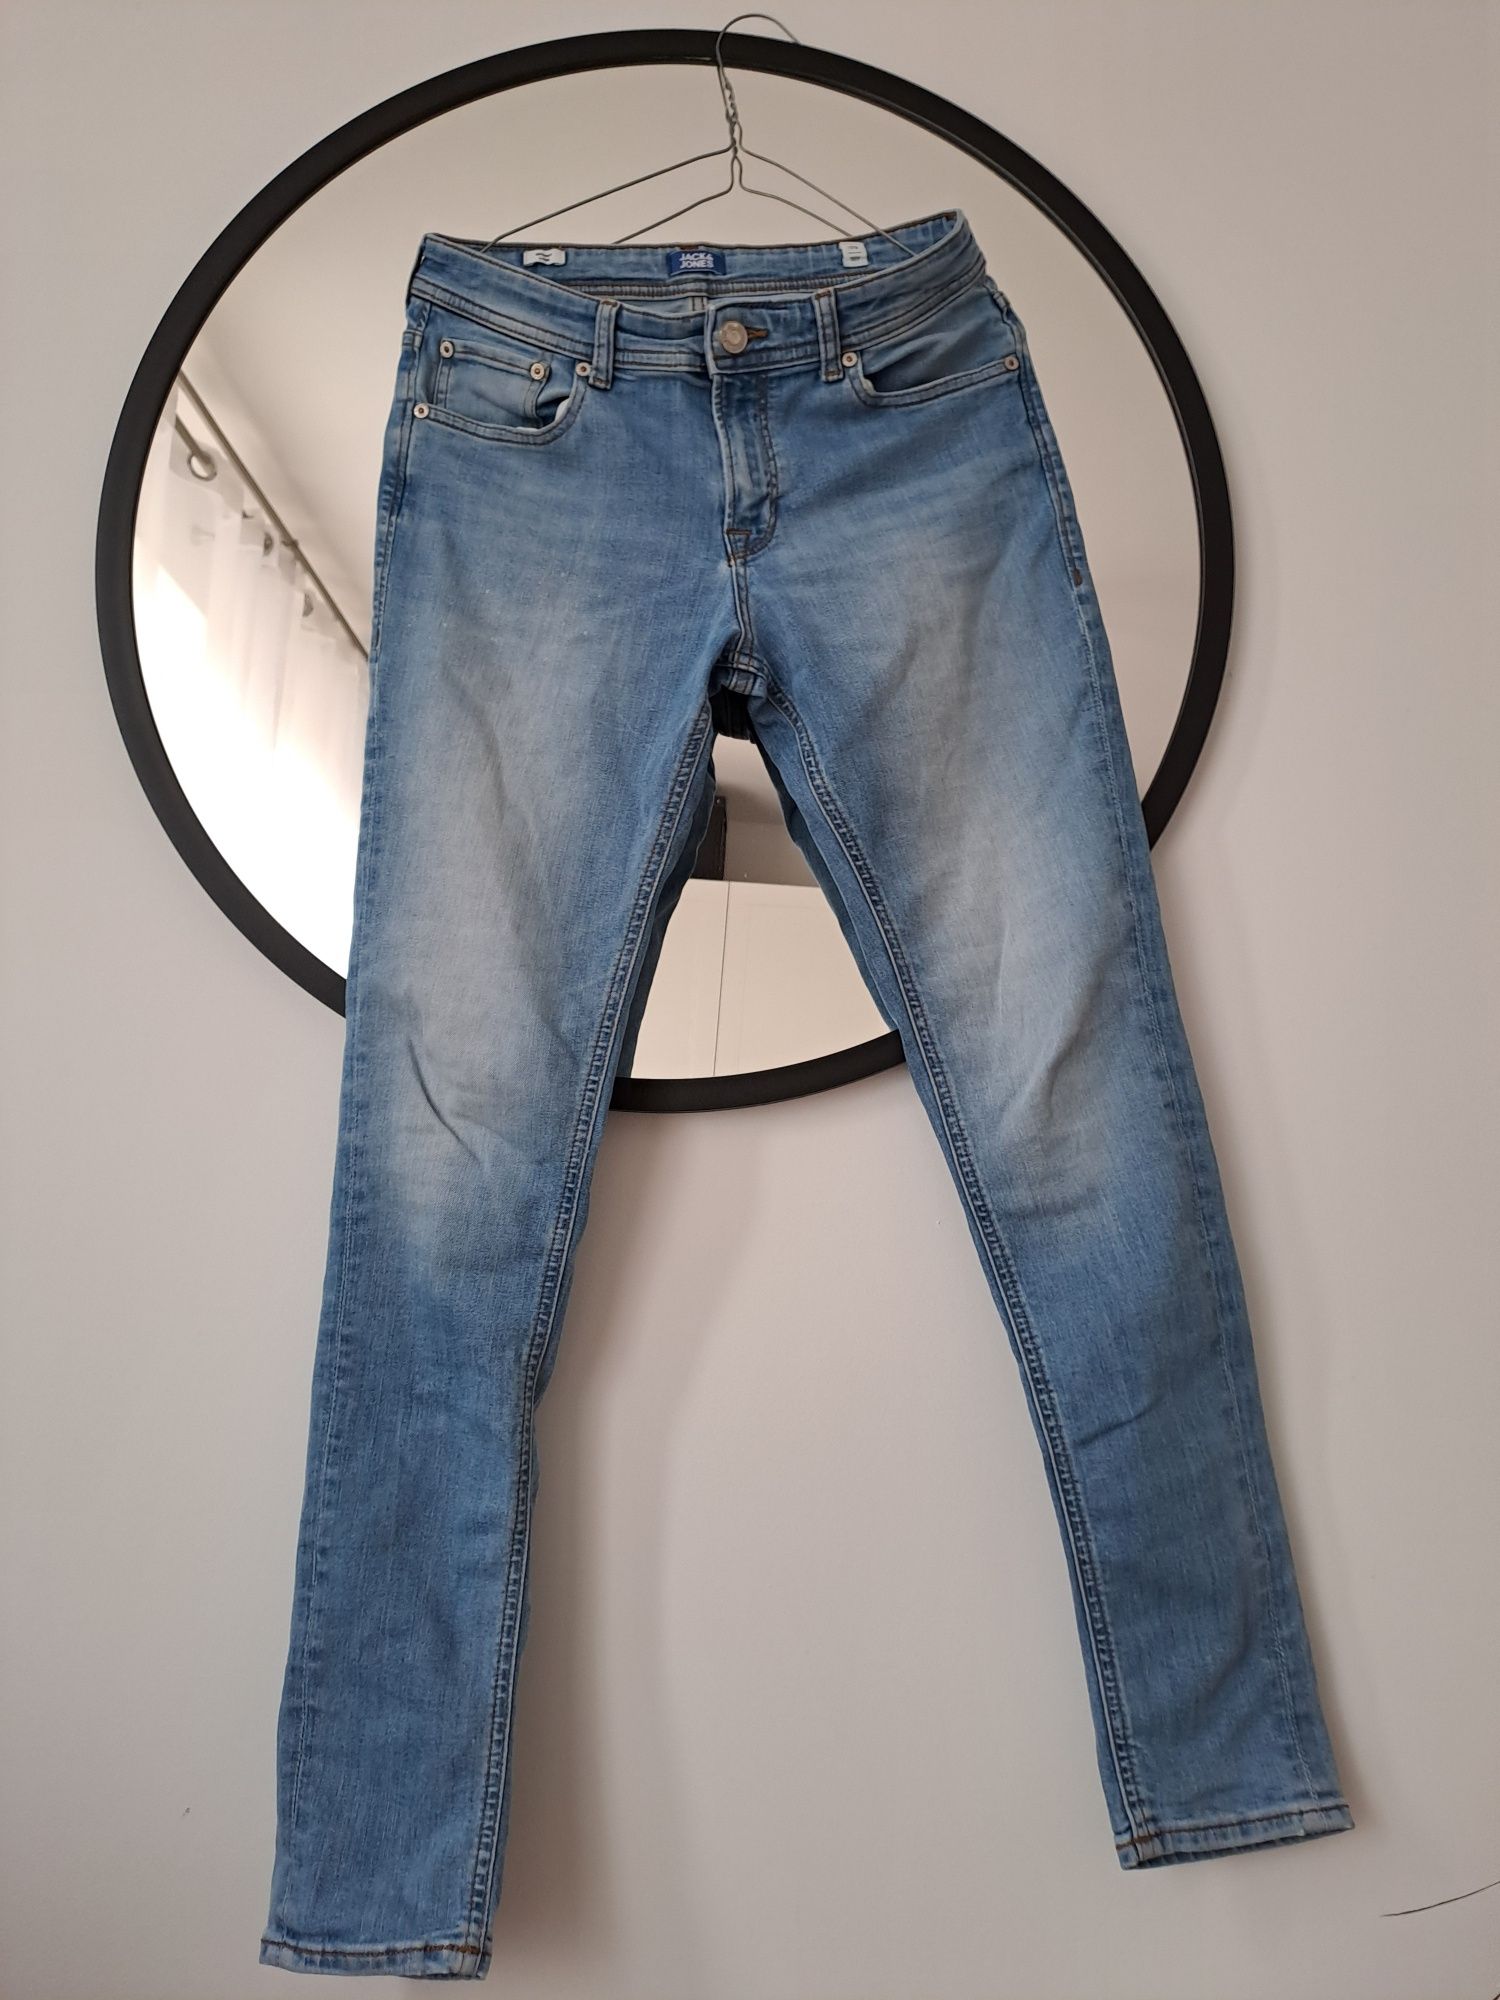 Spodnie męskie jeans rozm S